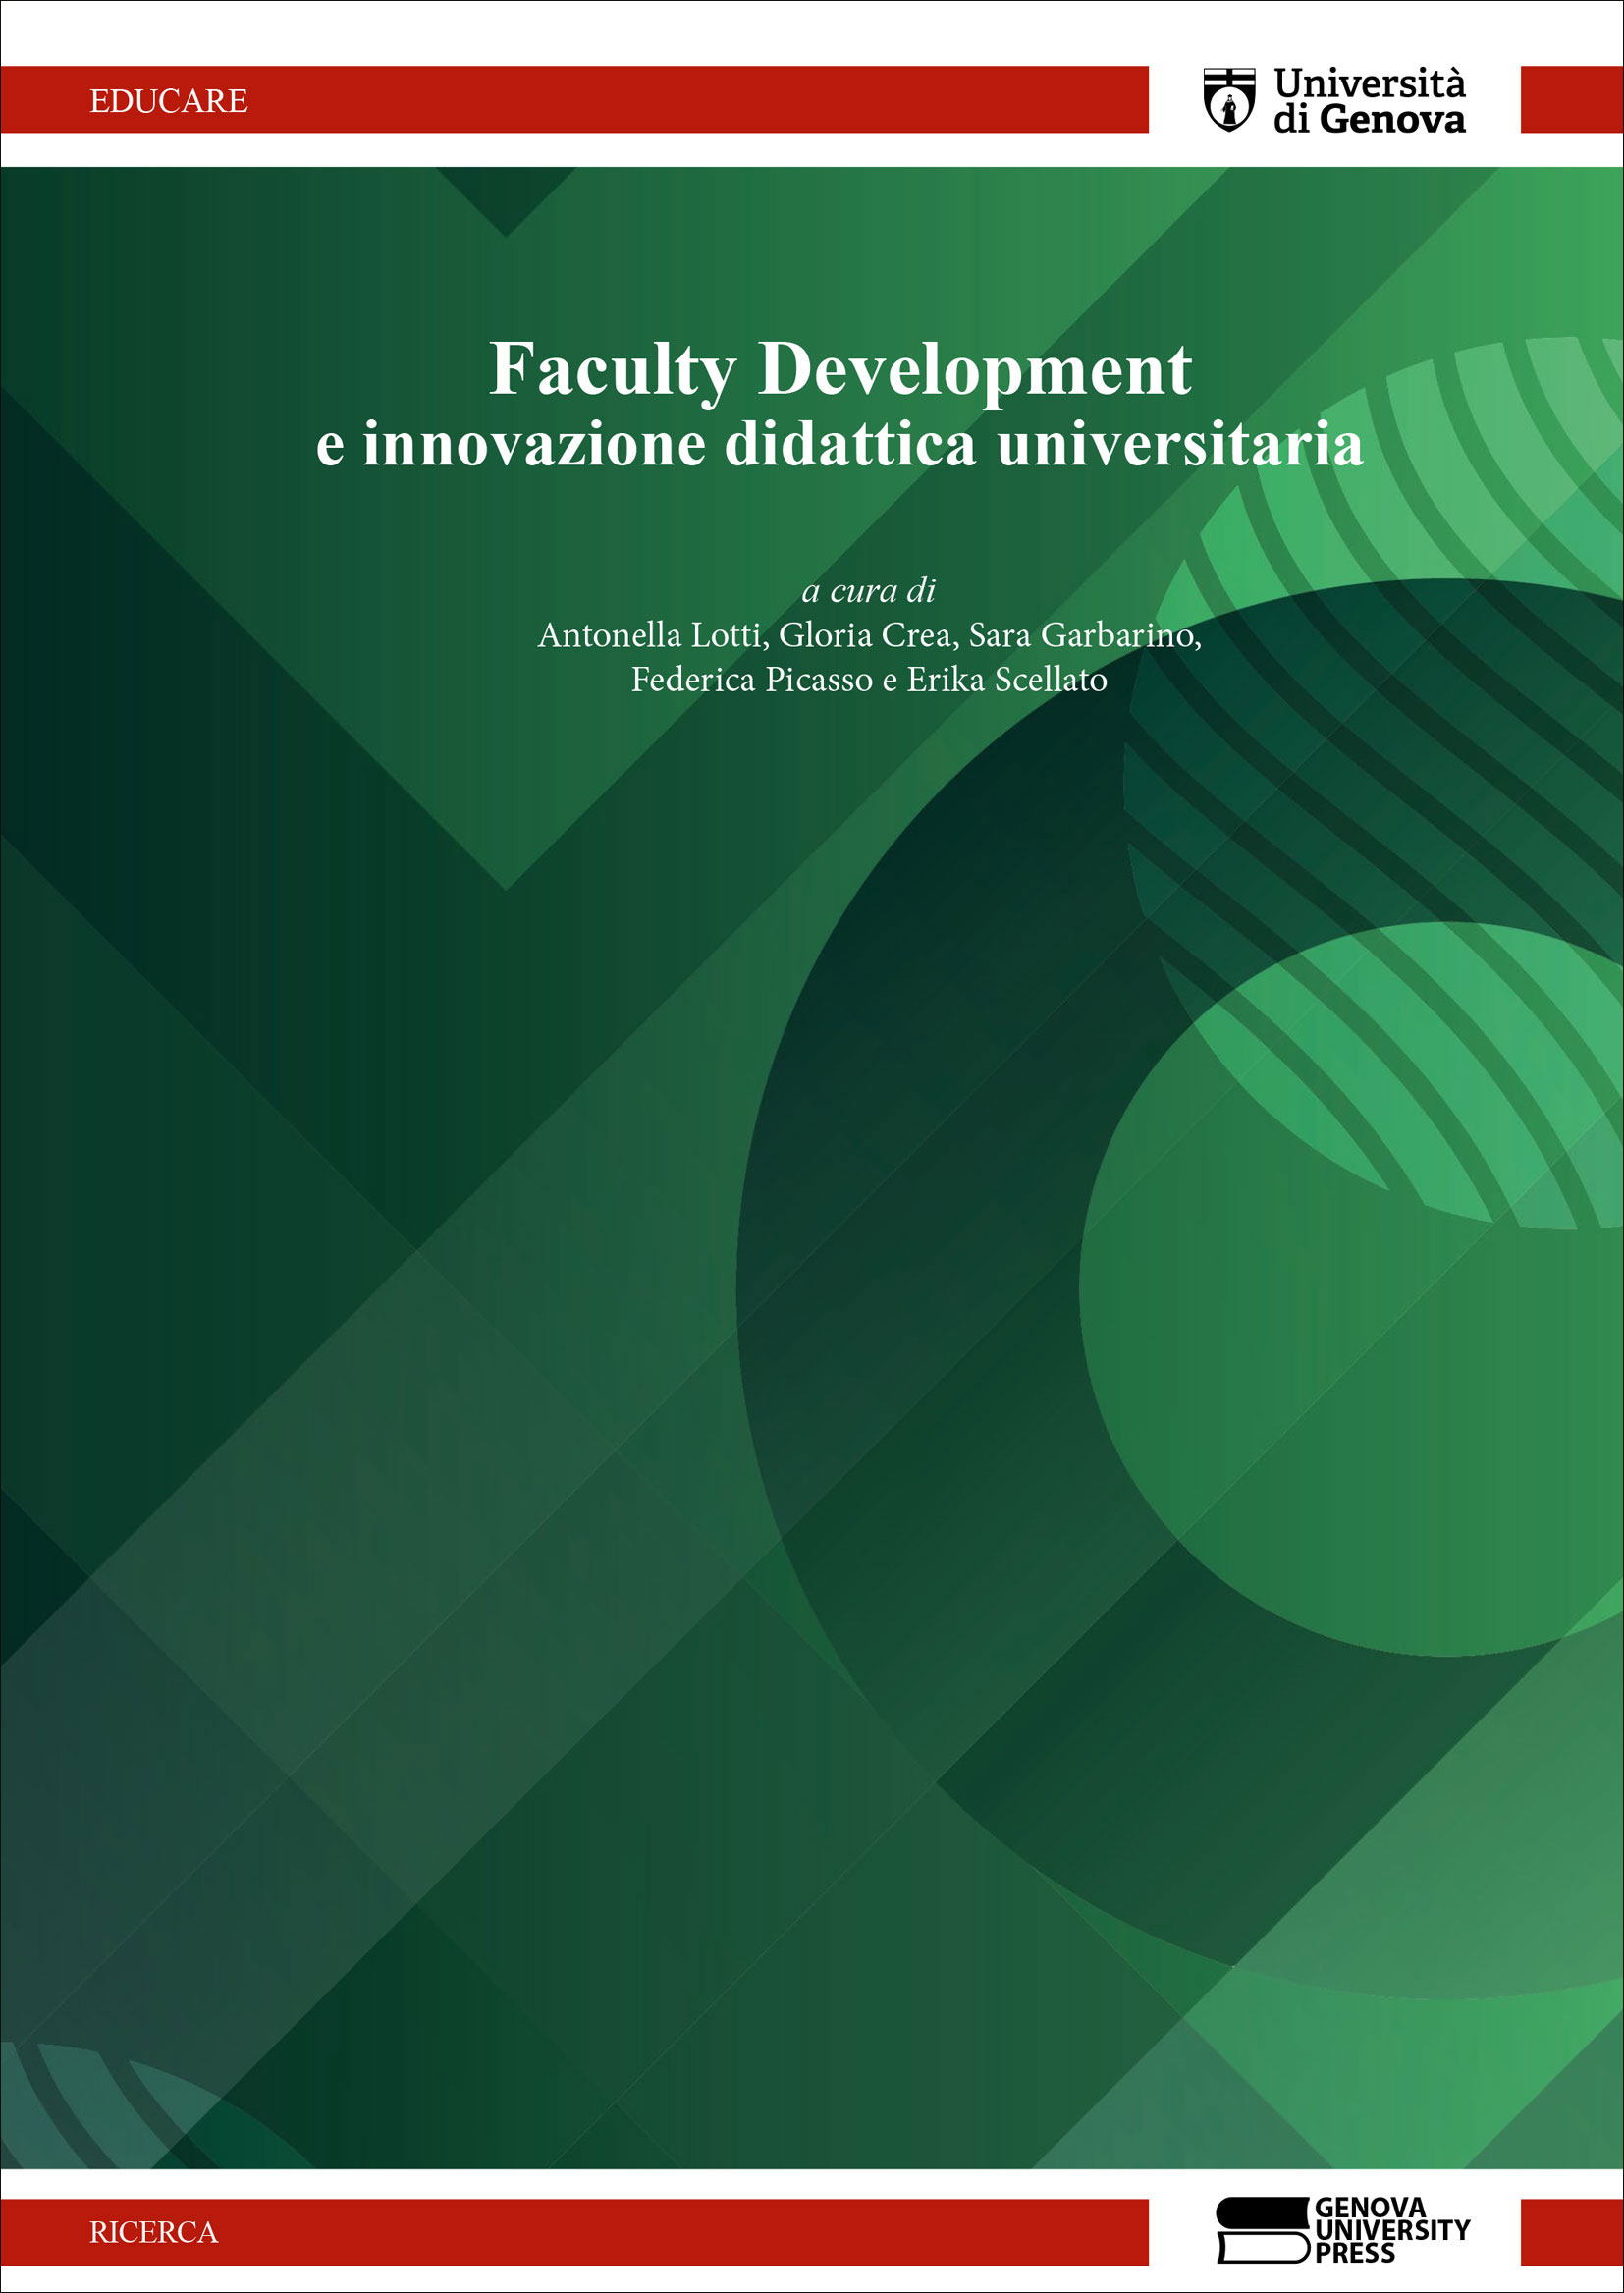 Faculty Development e innovazione didattica universitaria